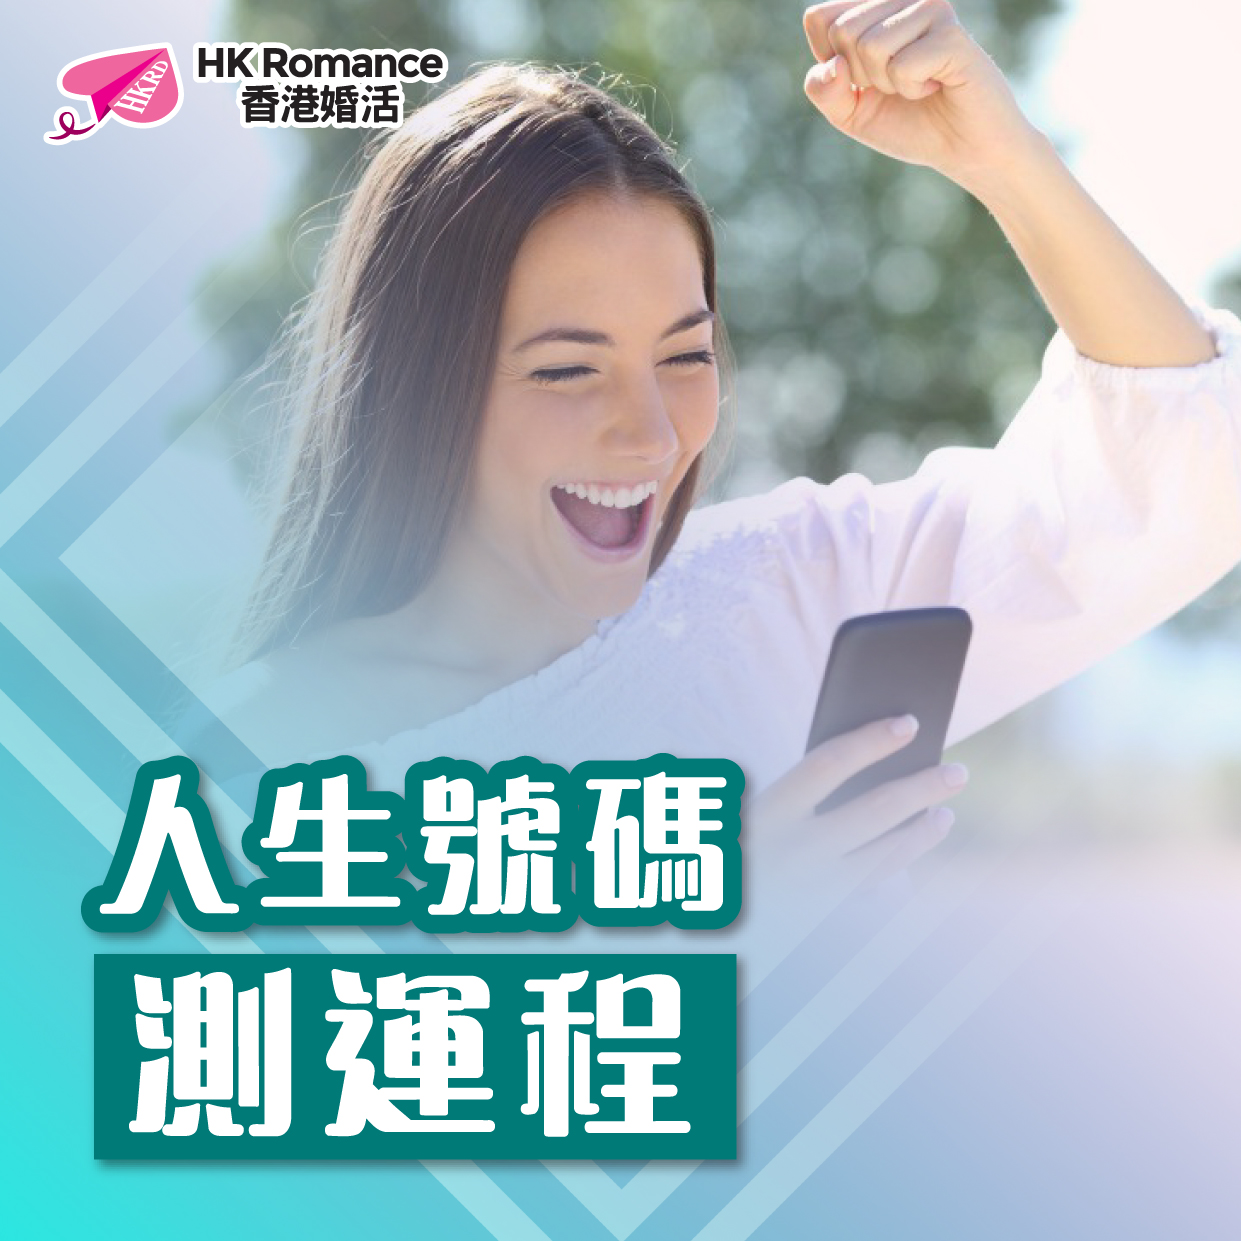 (完滿舉行)人生號碼測運程 5月23日 (SAT) 香港交友約會業協會 Hong Kong Speed Dating Federation - Speed Dating , 一對一約會, 單對單約會, 約會行業, 約會配對